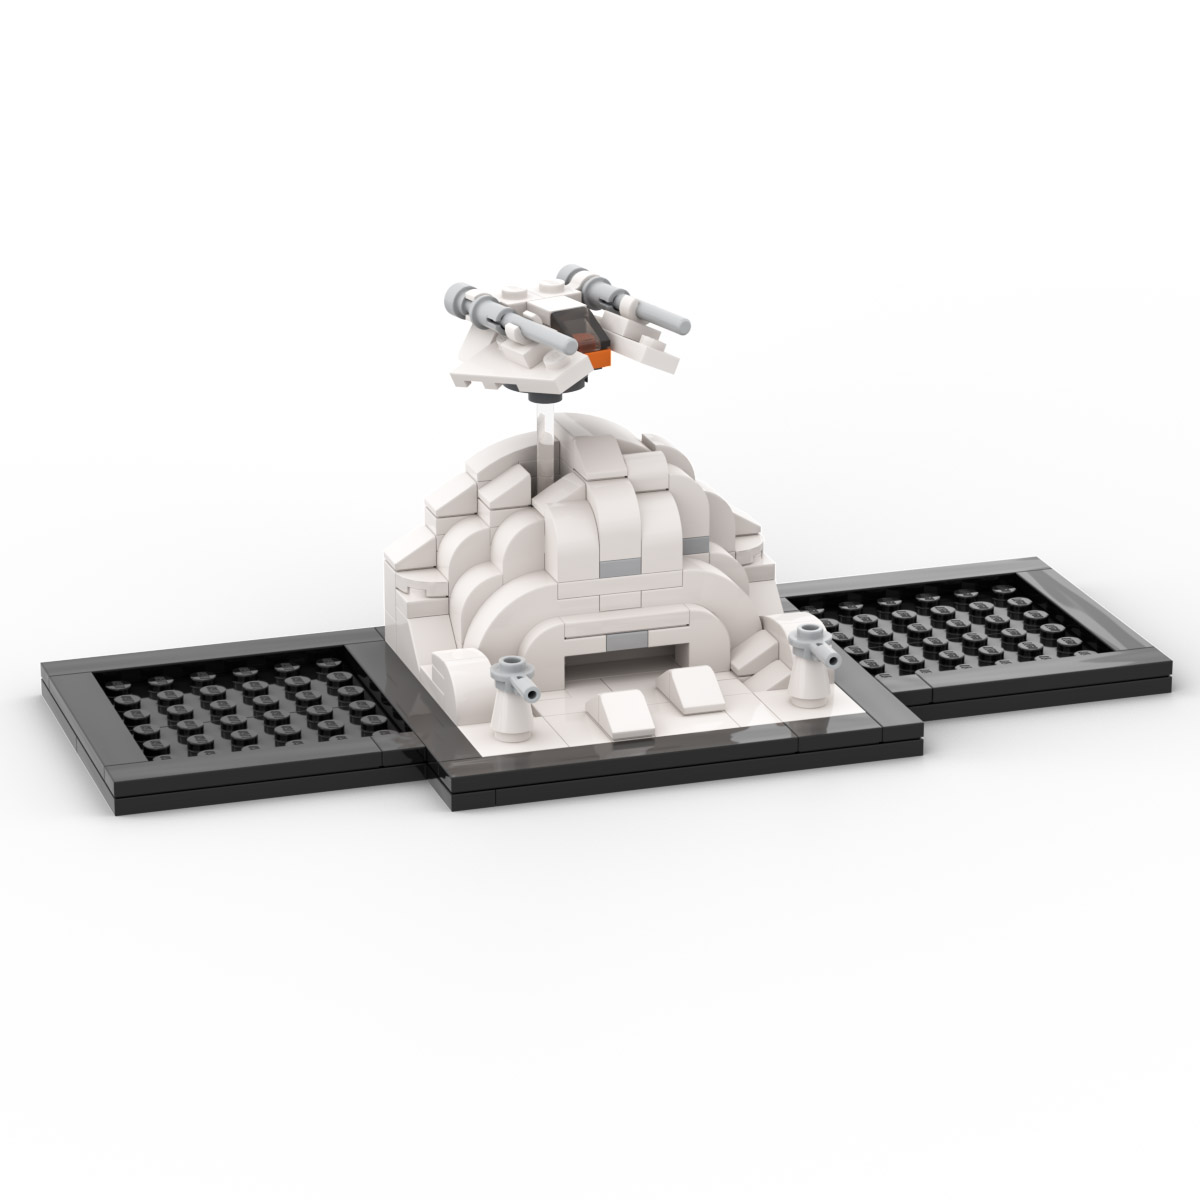 Lego Wars Assualt on Brickheadz Base Instructions